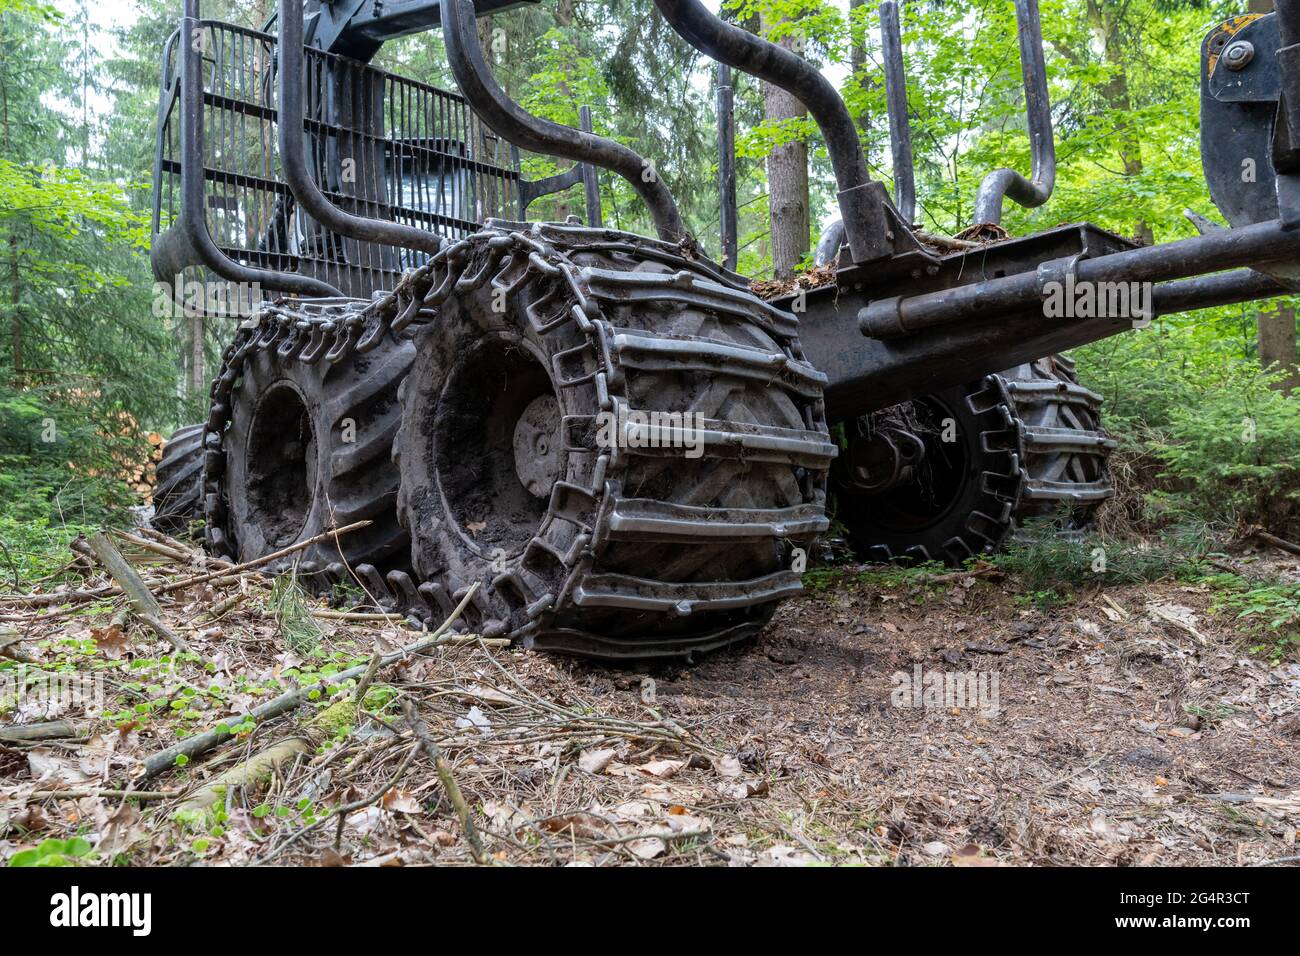 Wald harvester Reifen mit Traktion Ketten montiert Stockfotografie - Alamy